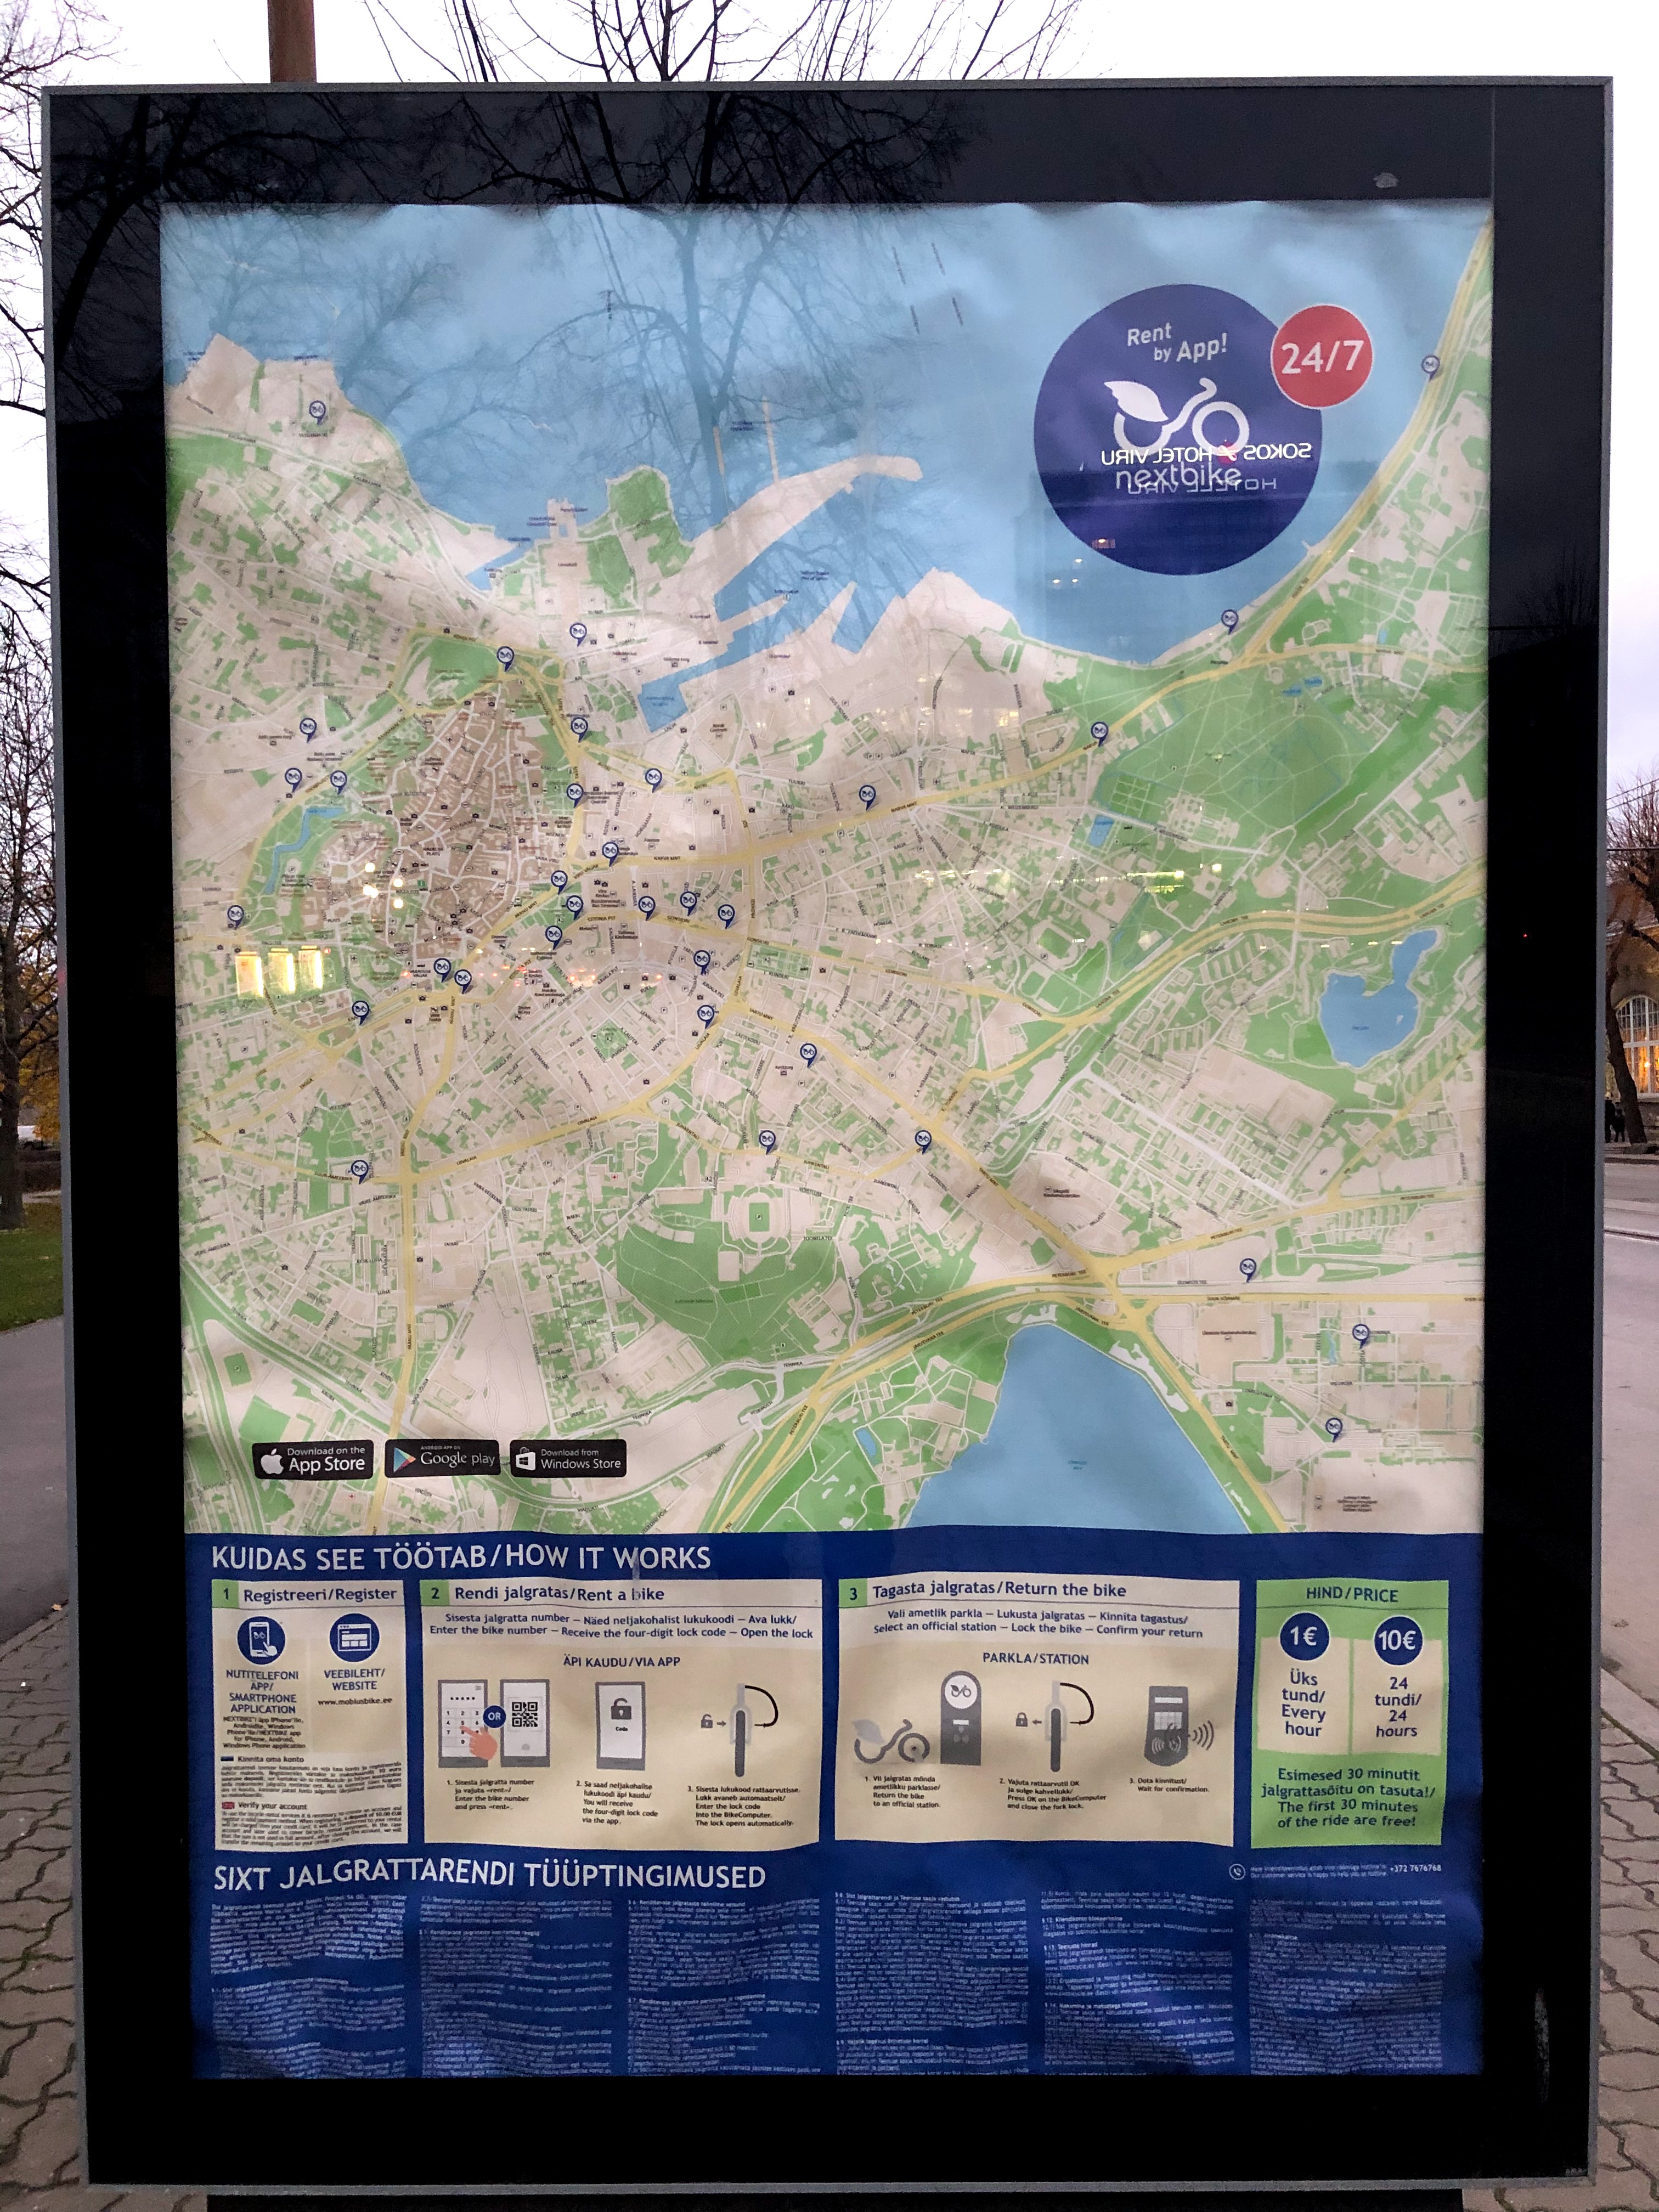 Tallinnban természetesen a bringakölcsönzés is app segítségével működik. 